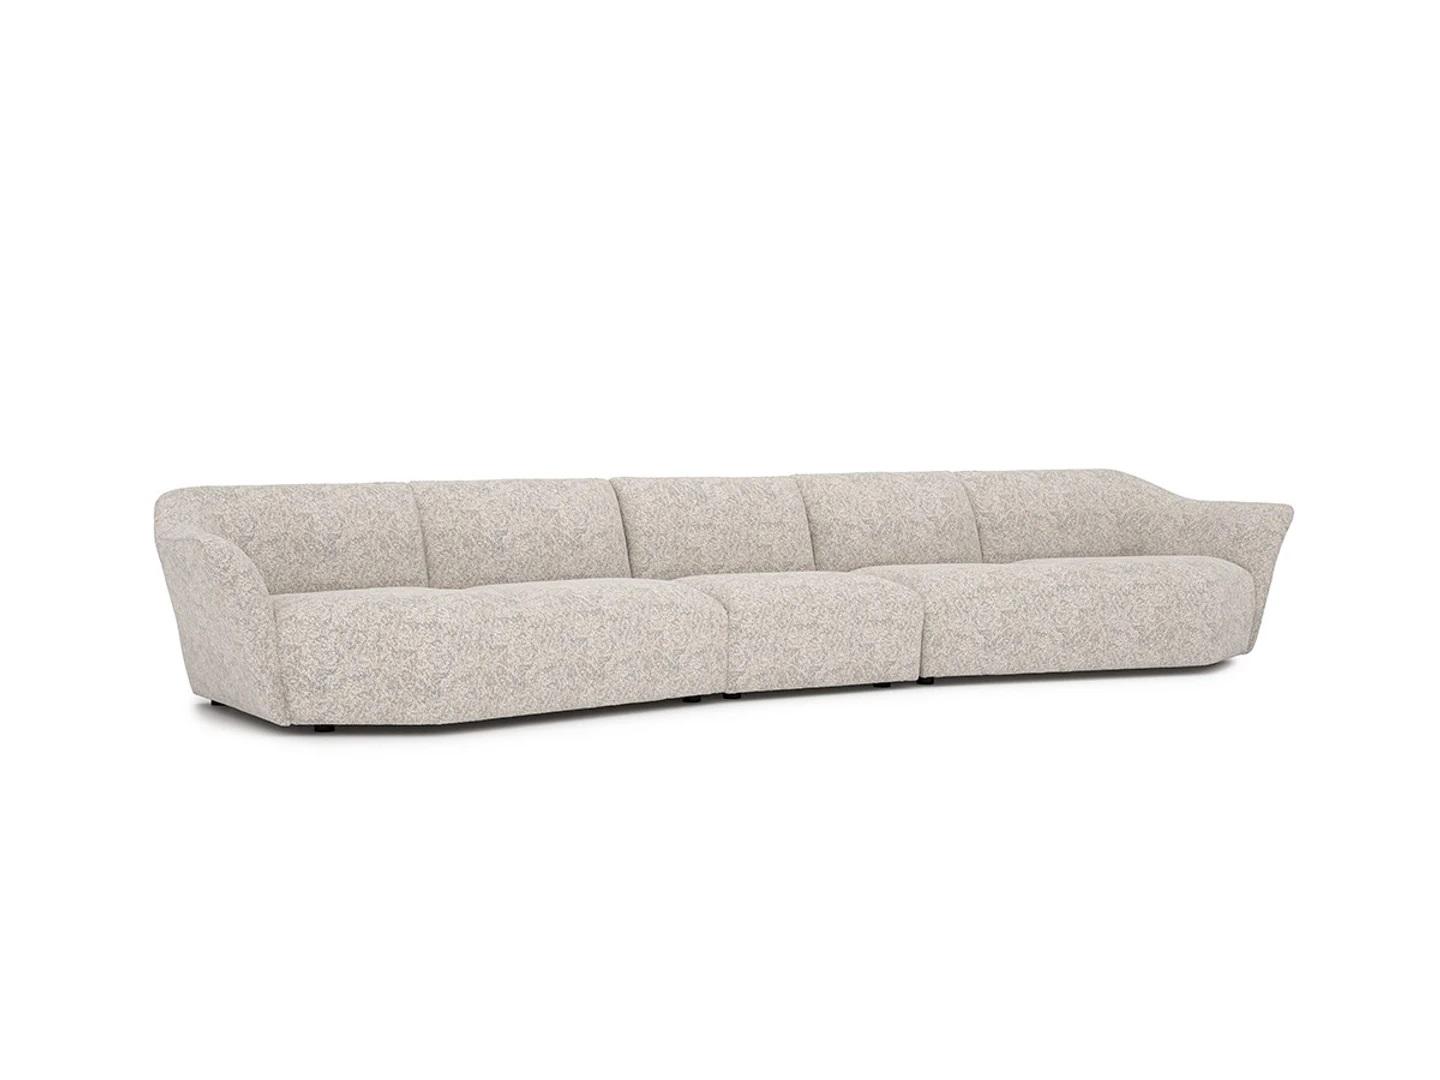 Fünfsitzer Sofa Couch 440cm Wohnzimmer Weiß Einrichtung Textil Polstermöbel